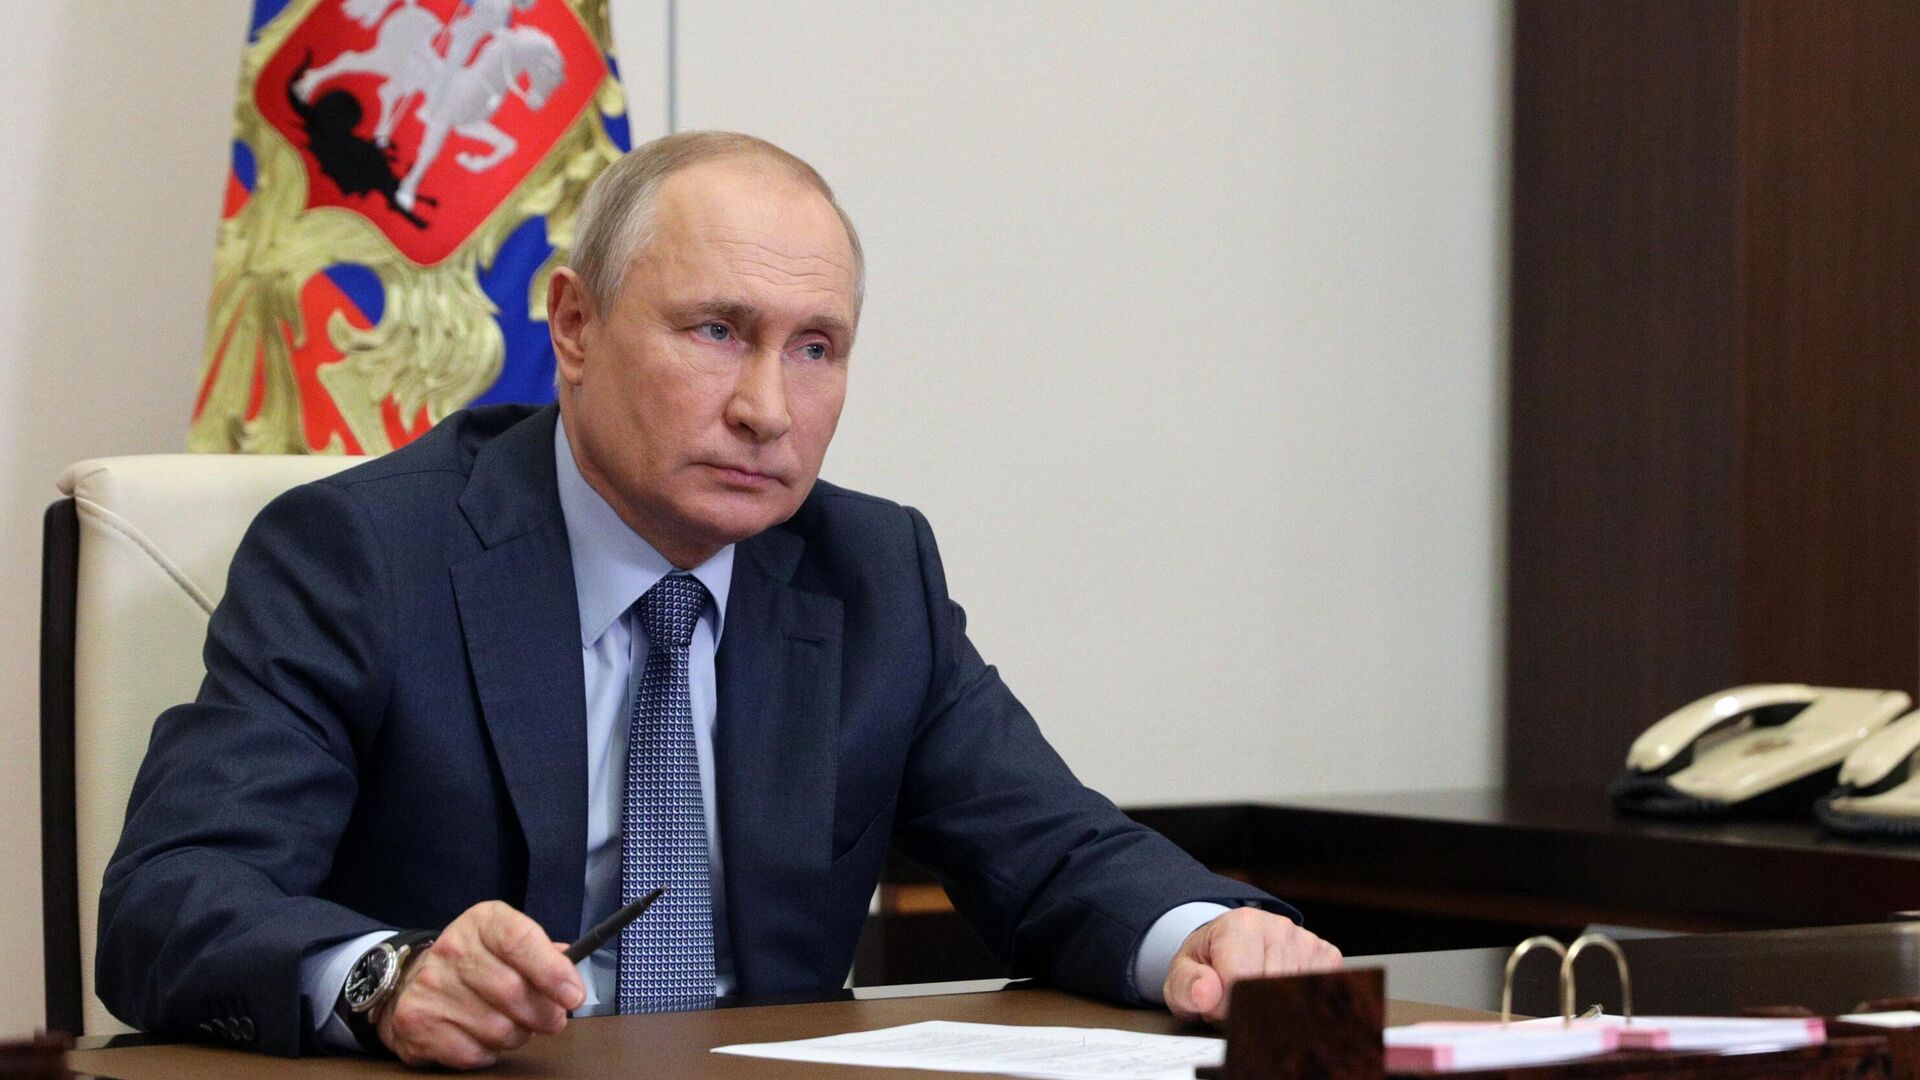 "Превентивный удар". Американцы оценили ответ Путина на выпад Байдена